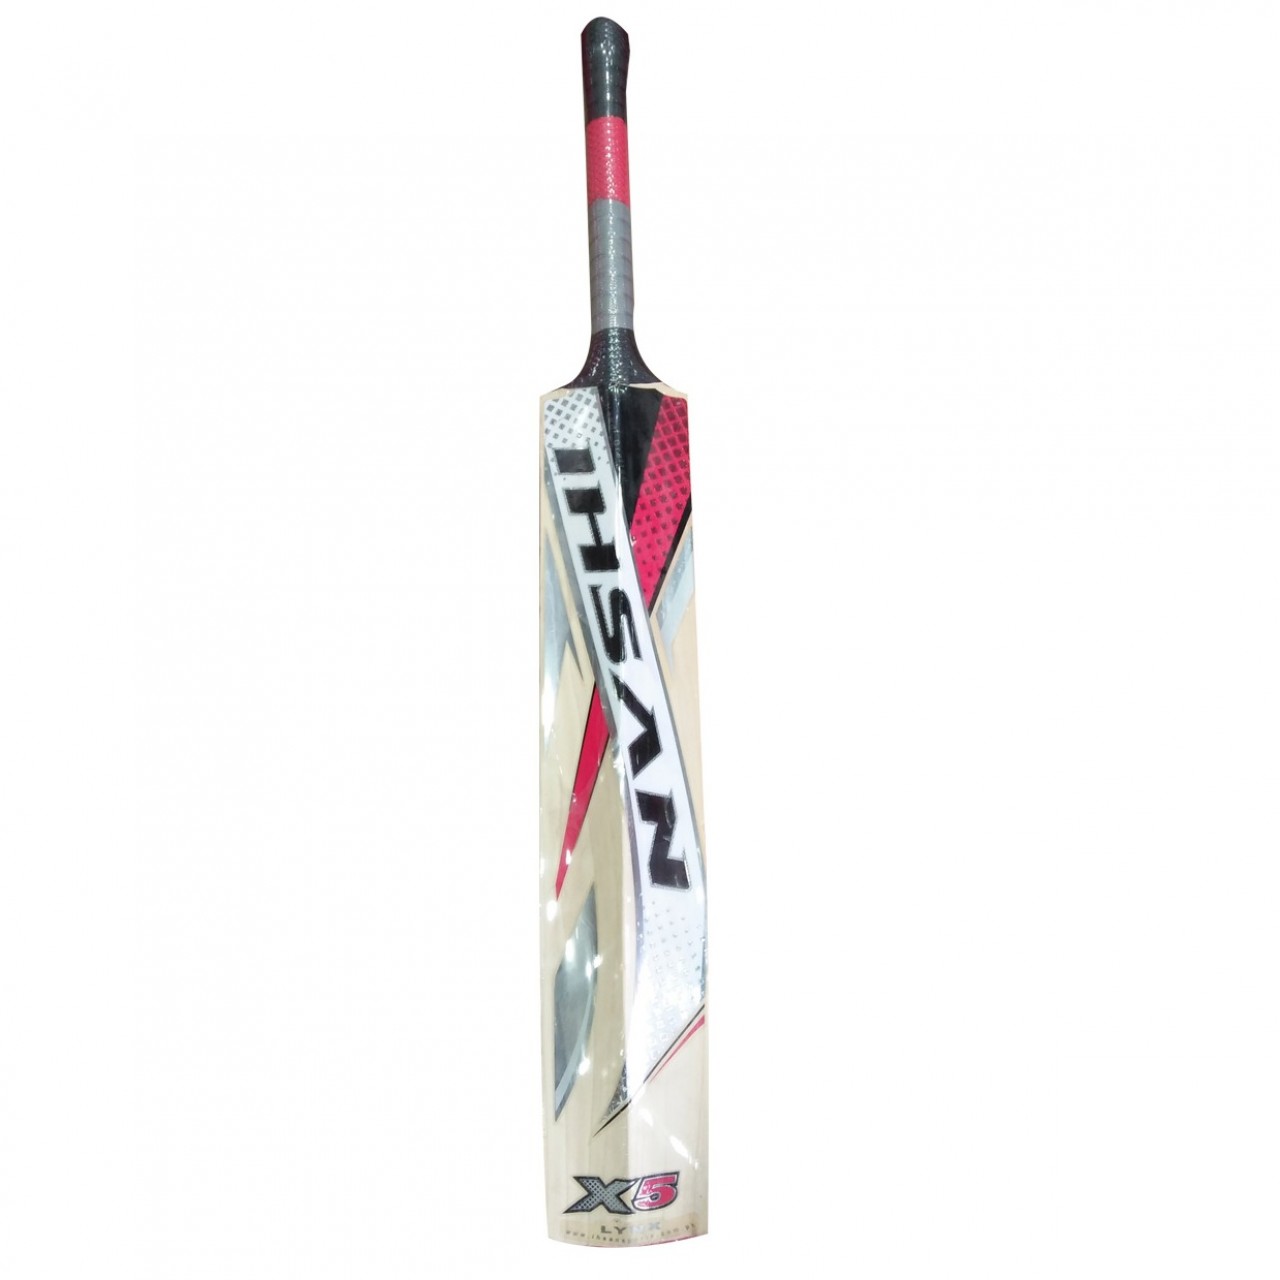 Ihsan X5 Lynx Cricket Bat For Hard Ball